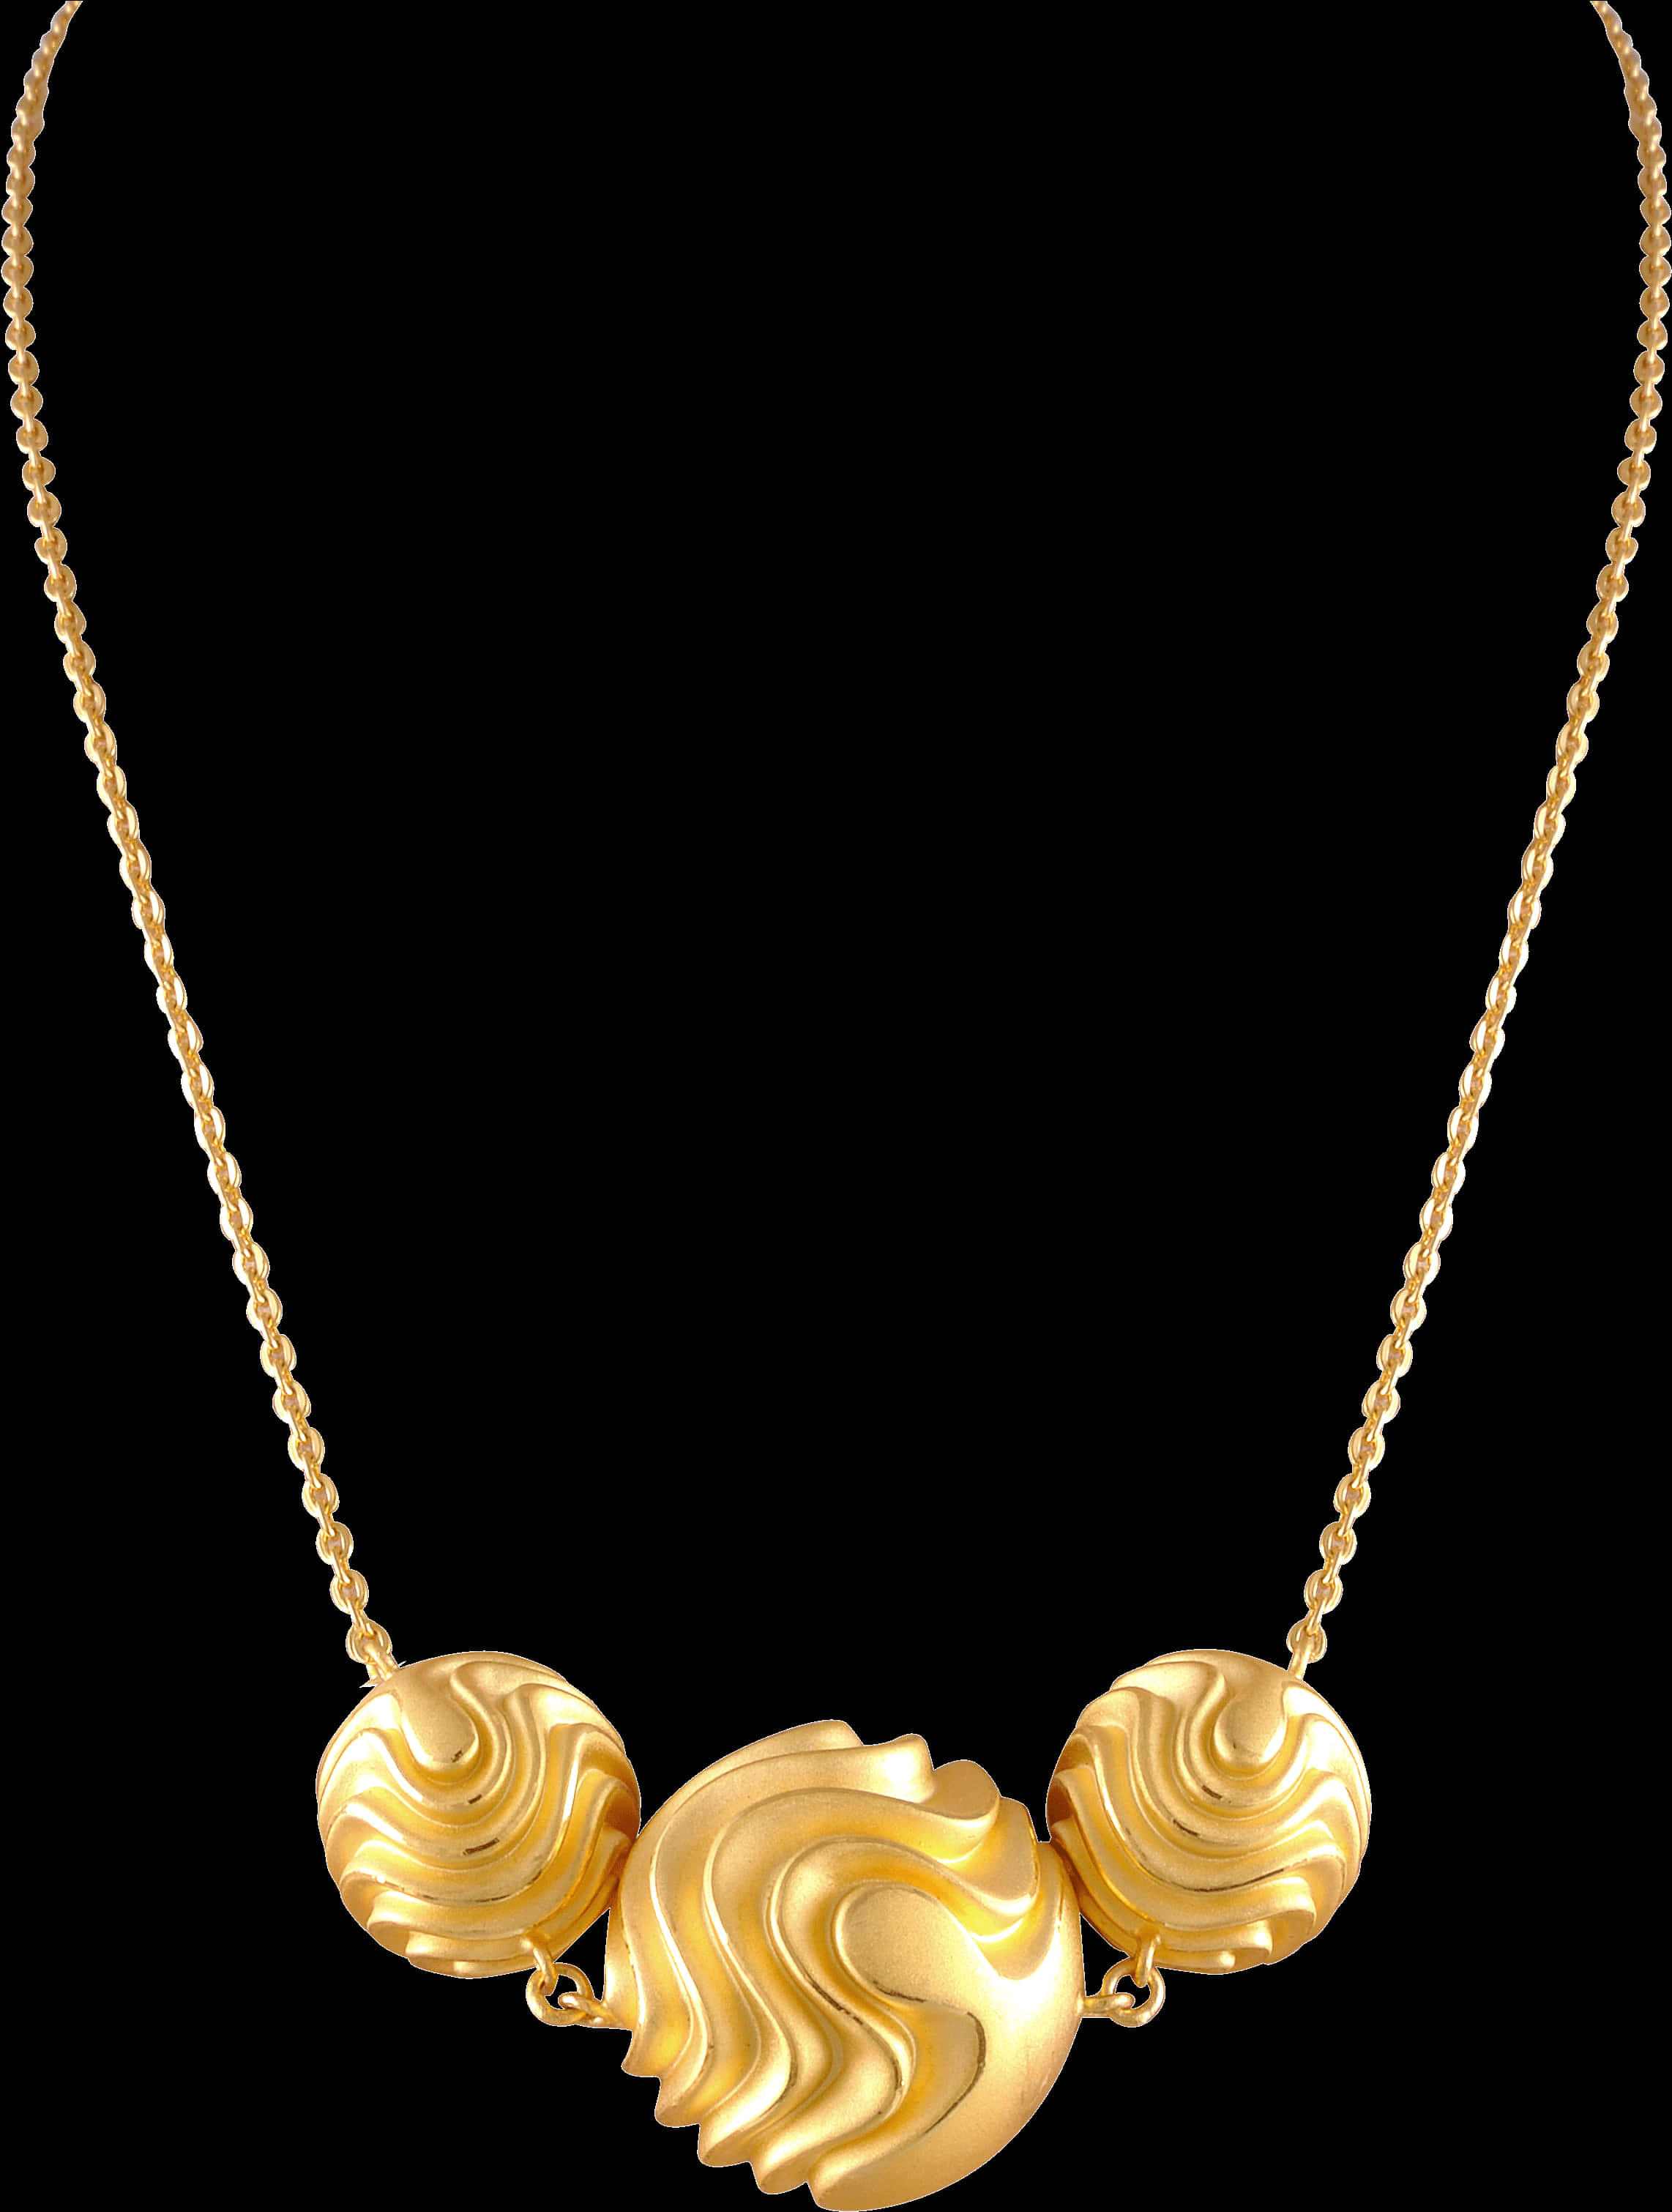 Elegant Gold Necklace Design